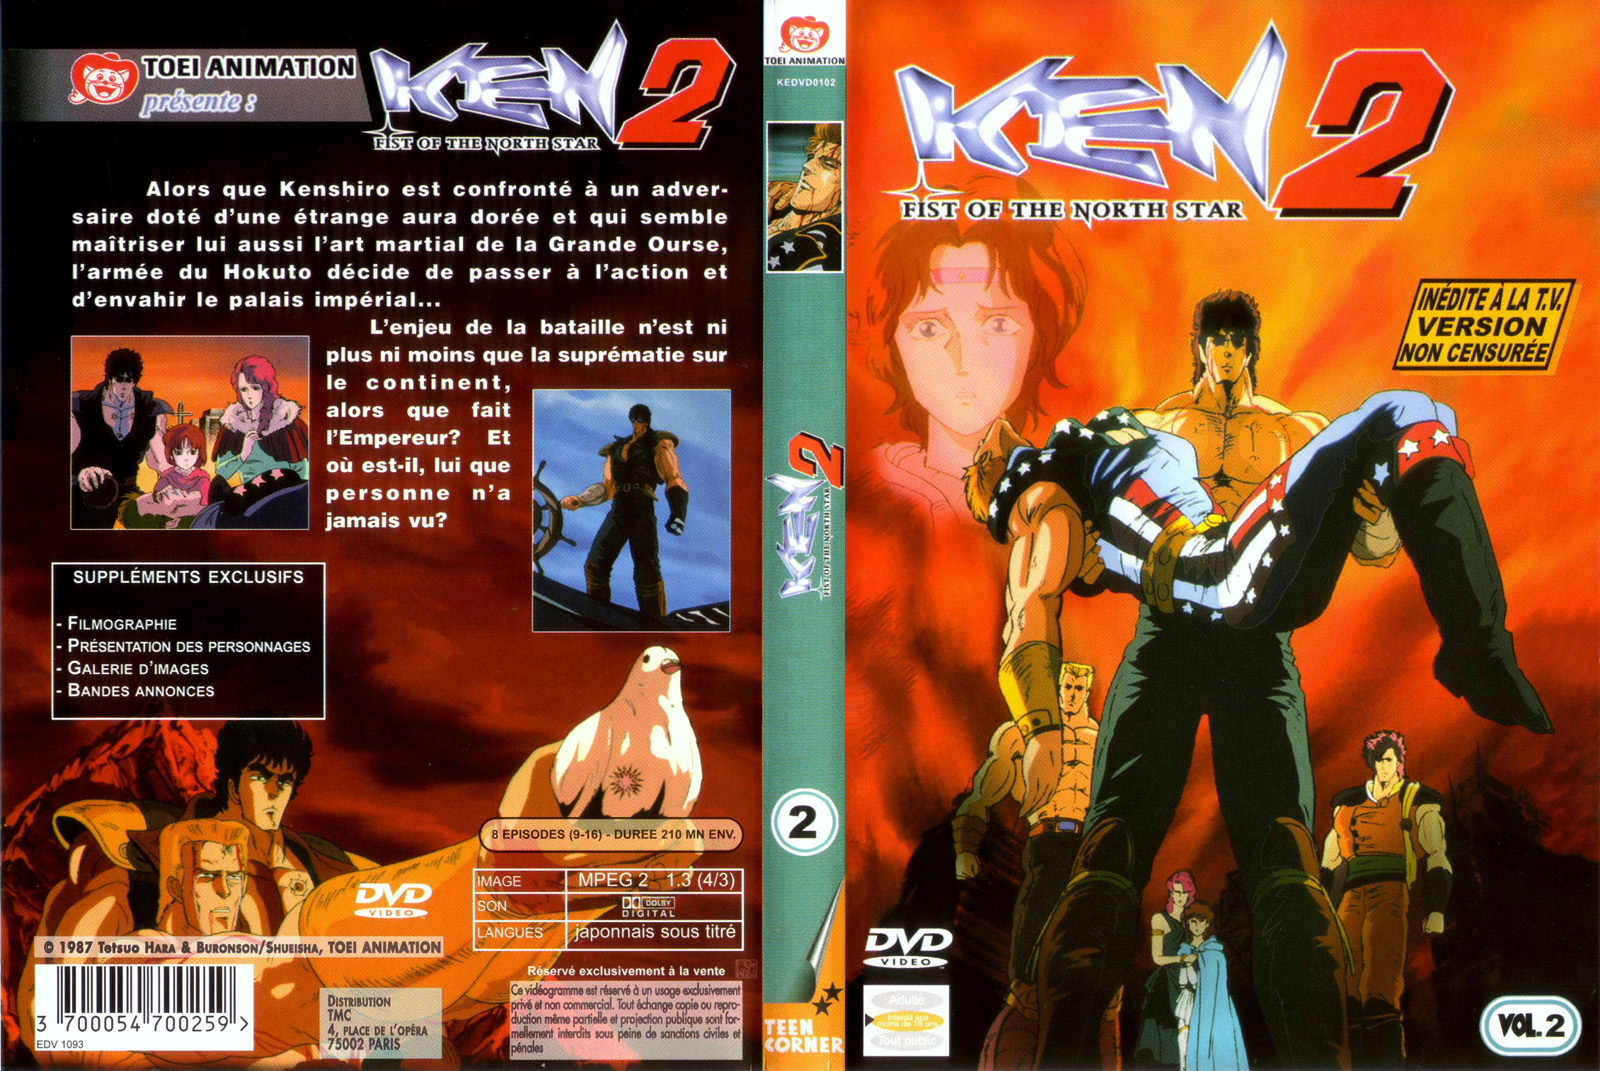 Jaquette DVD Ken 2 vol 2